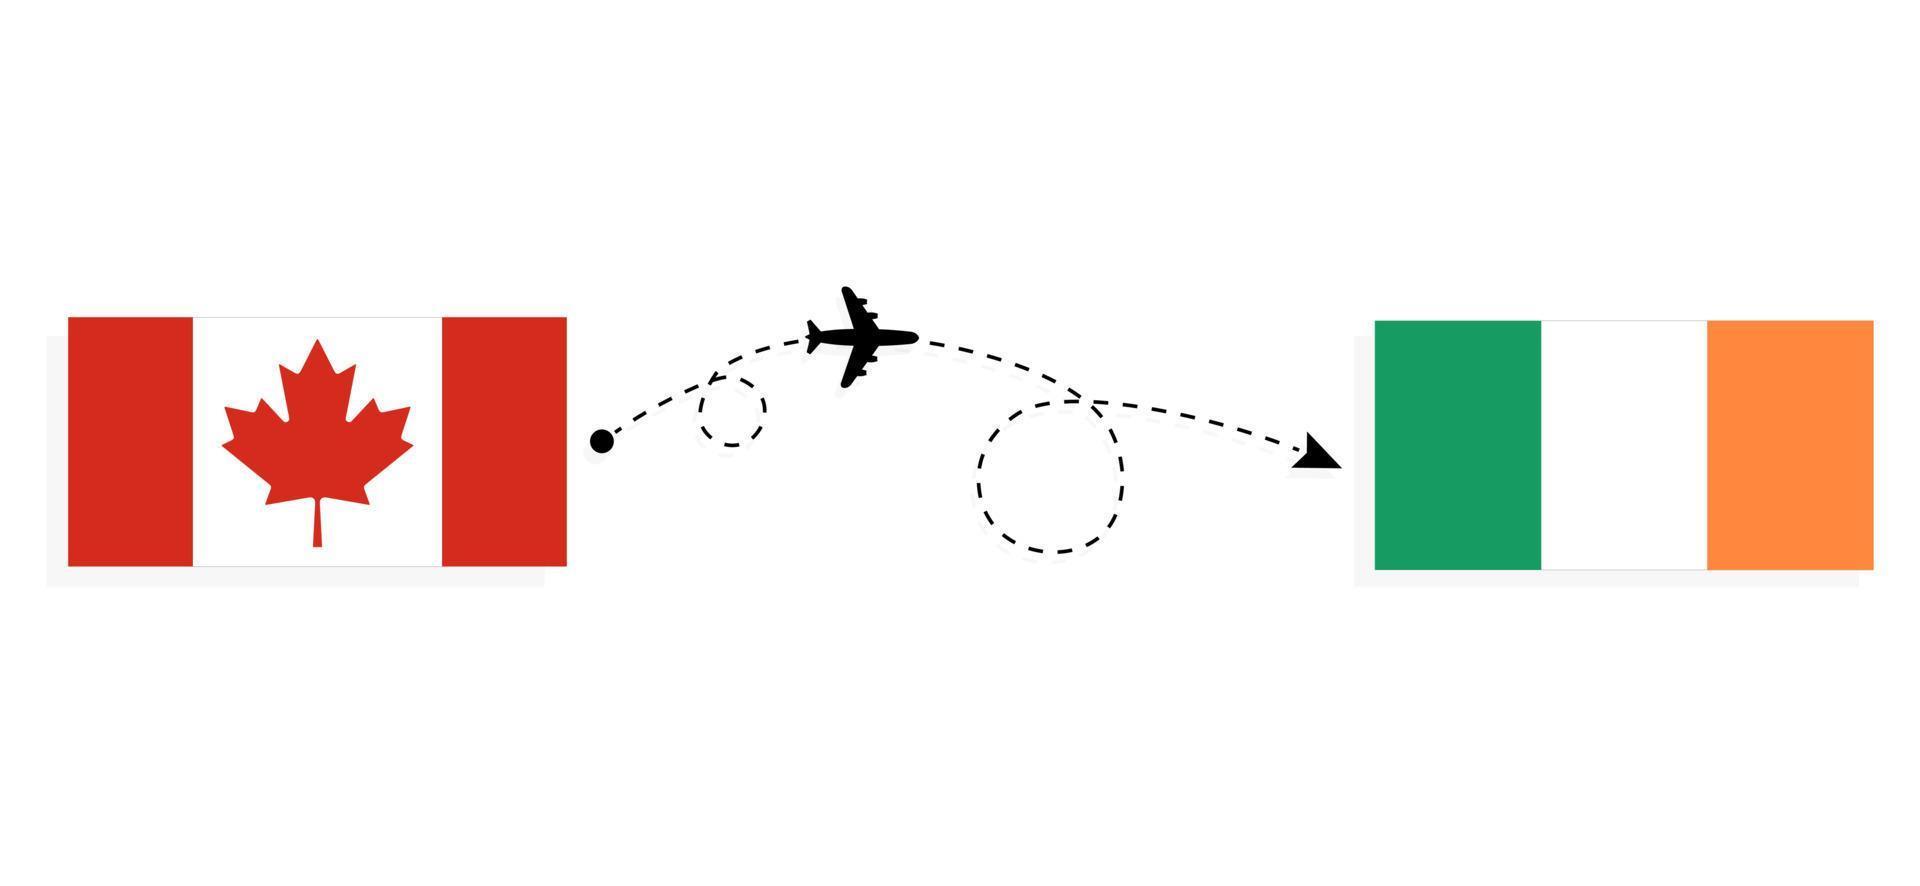 vuelo y viaje desde canadá a irlanda en avión de pasajeros concepto de viaje vector